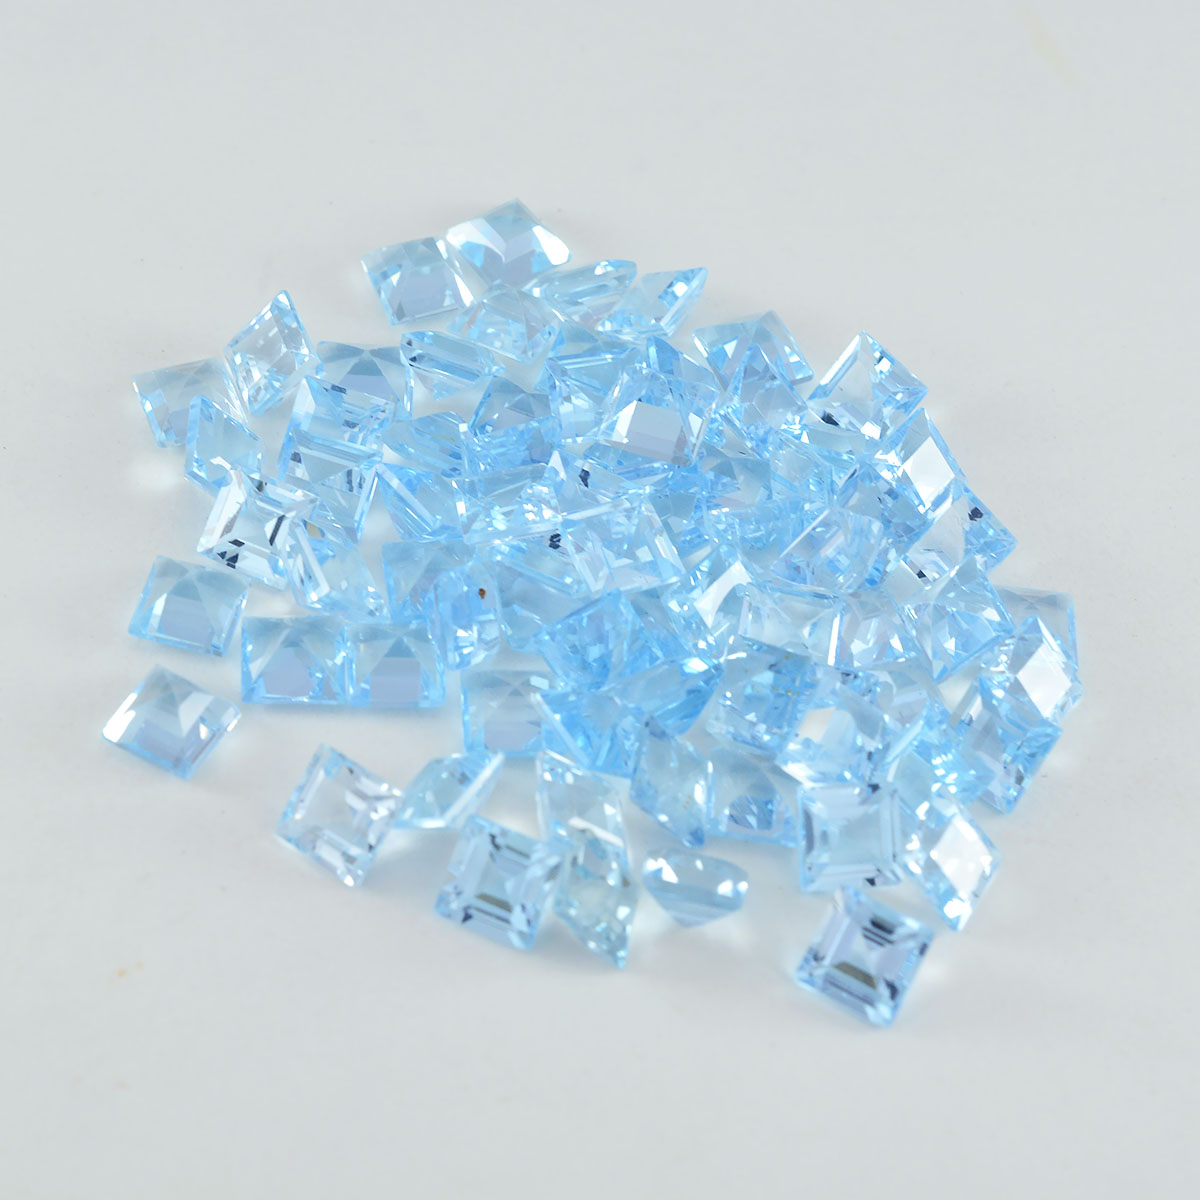 Riyogems 1PC echte blauwe topaas gefacetteerd 4x4 mm vierkante vorm A1 kwaliteit edelsteen